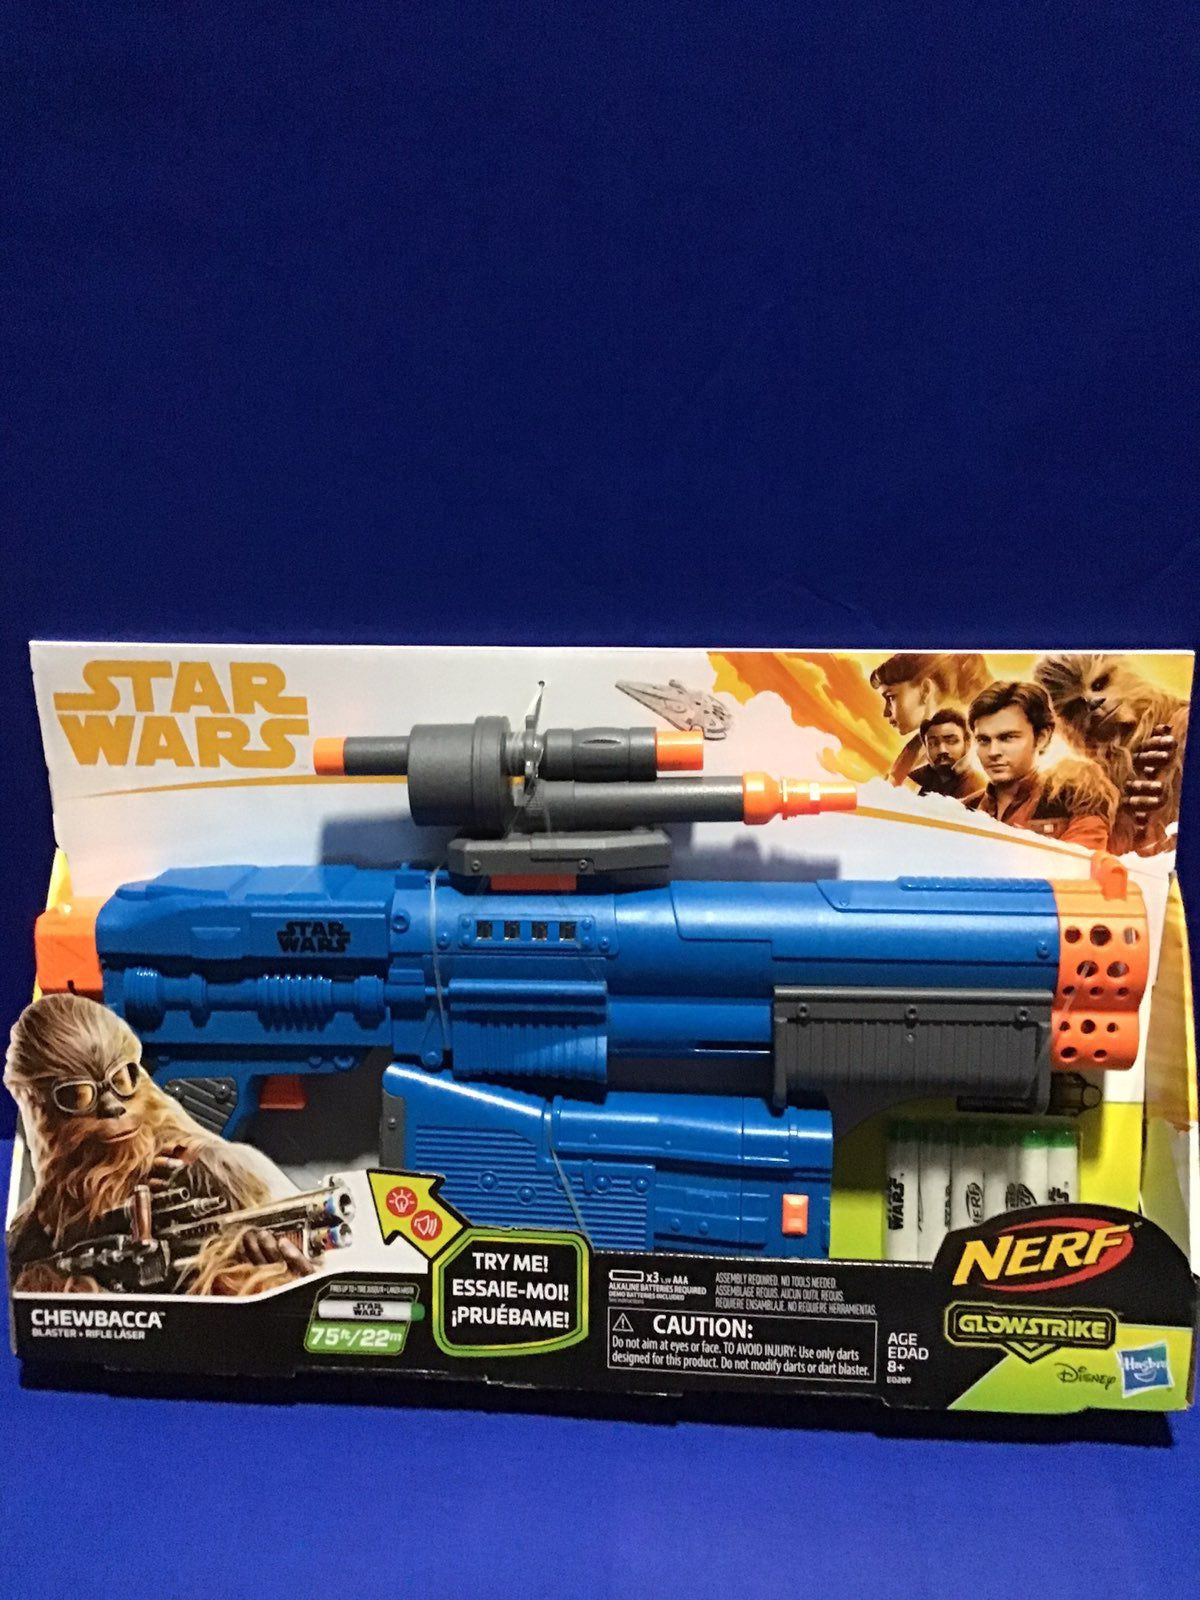 Star Wars nerf gun